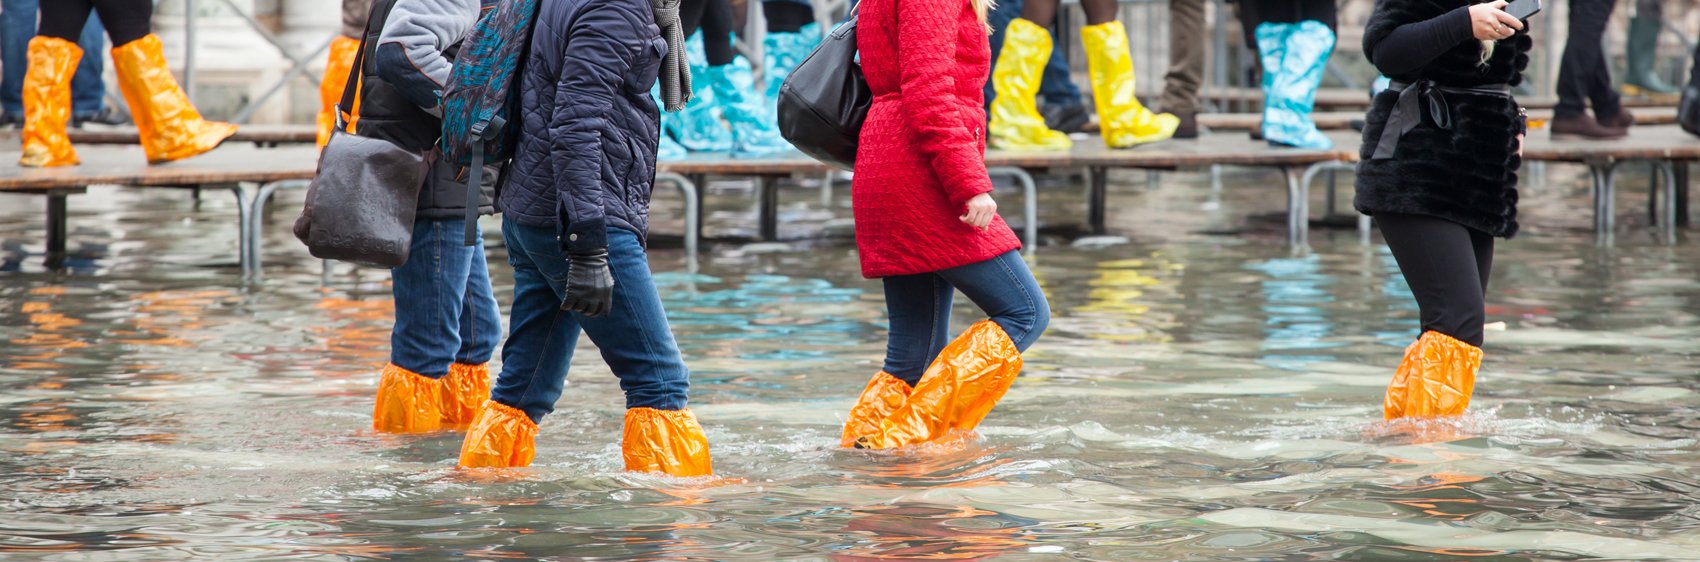 Personnes marchant n bottes en caoutchouc dans les rues inondées